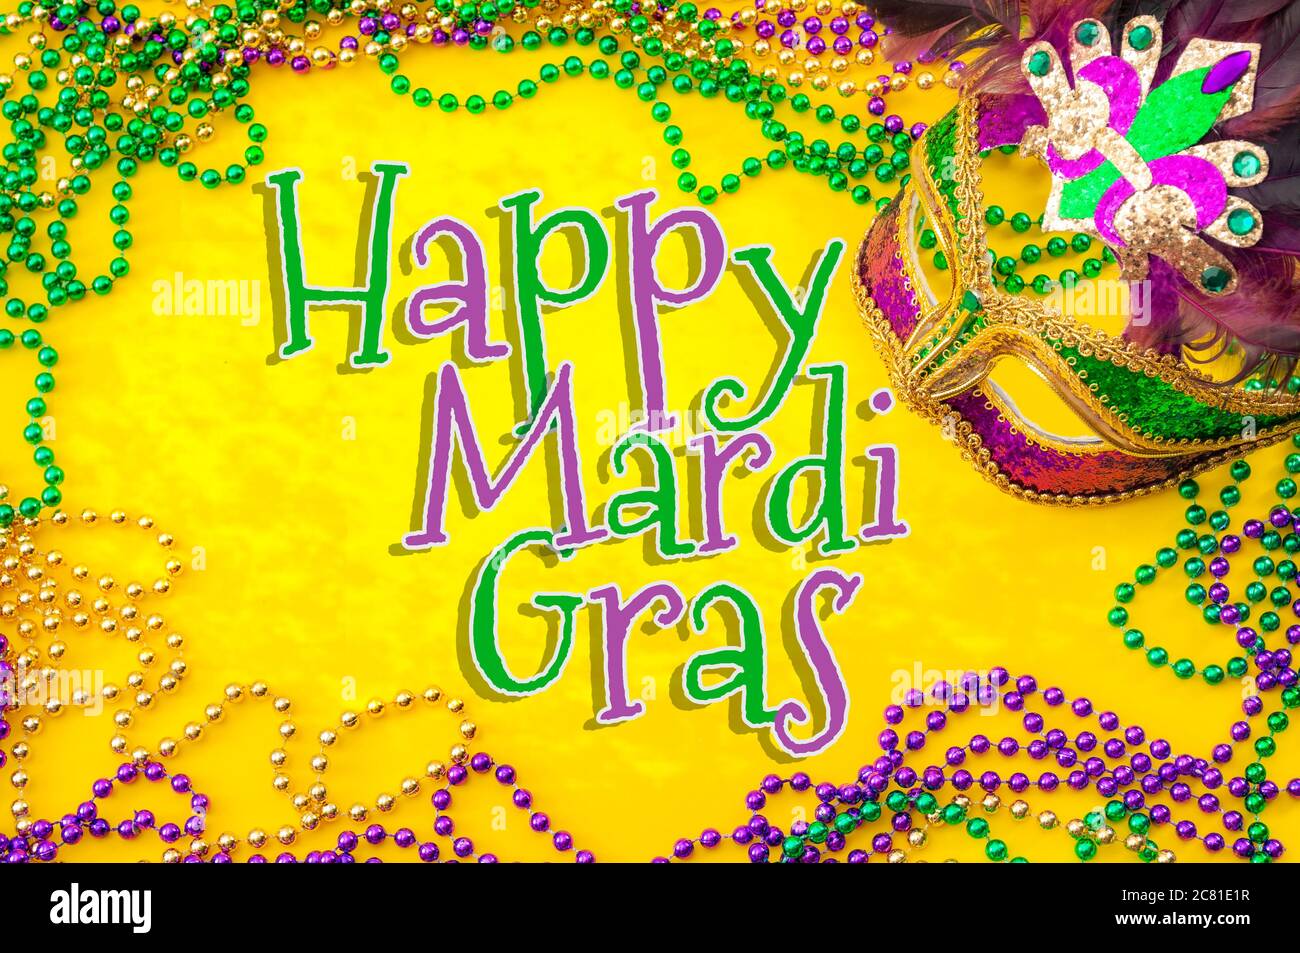 Happy Mardi gras et Mardi Carnival thème avec gros plan sur un masque de visage plein de couleur, plumes et texture et doré, vert et violet Banque D'Images